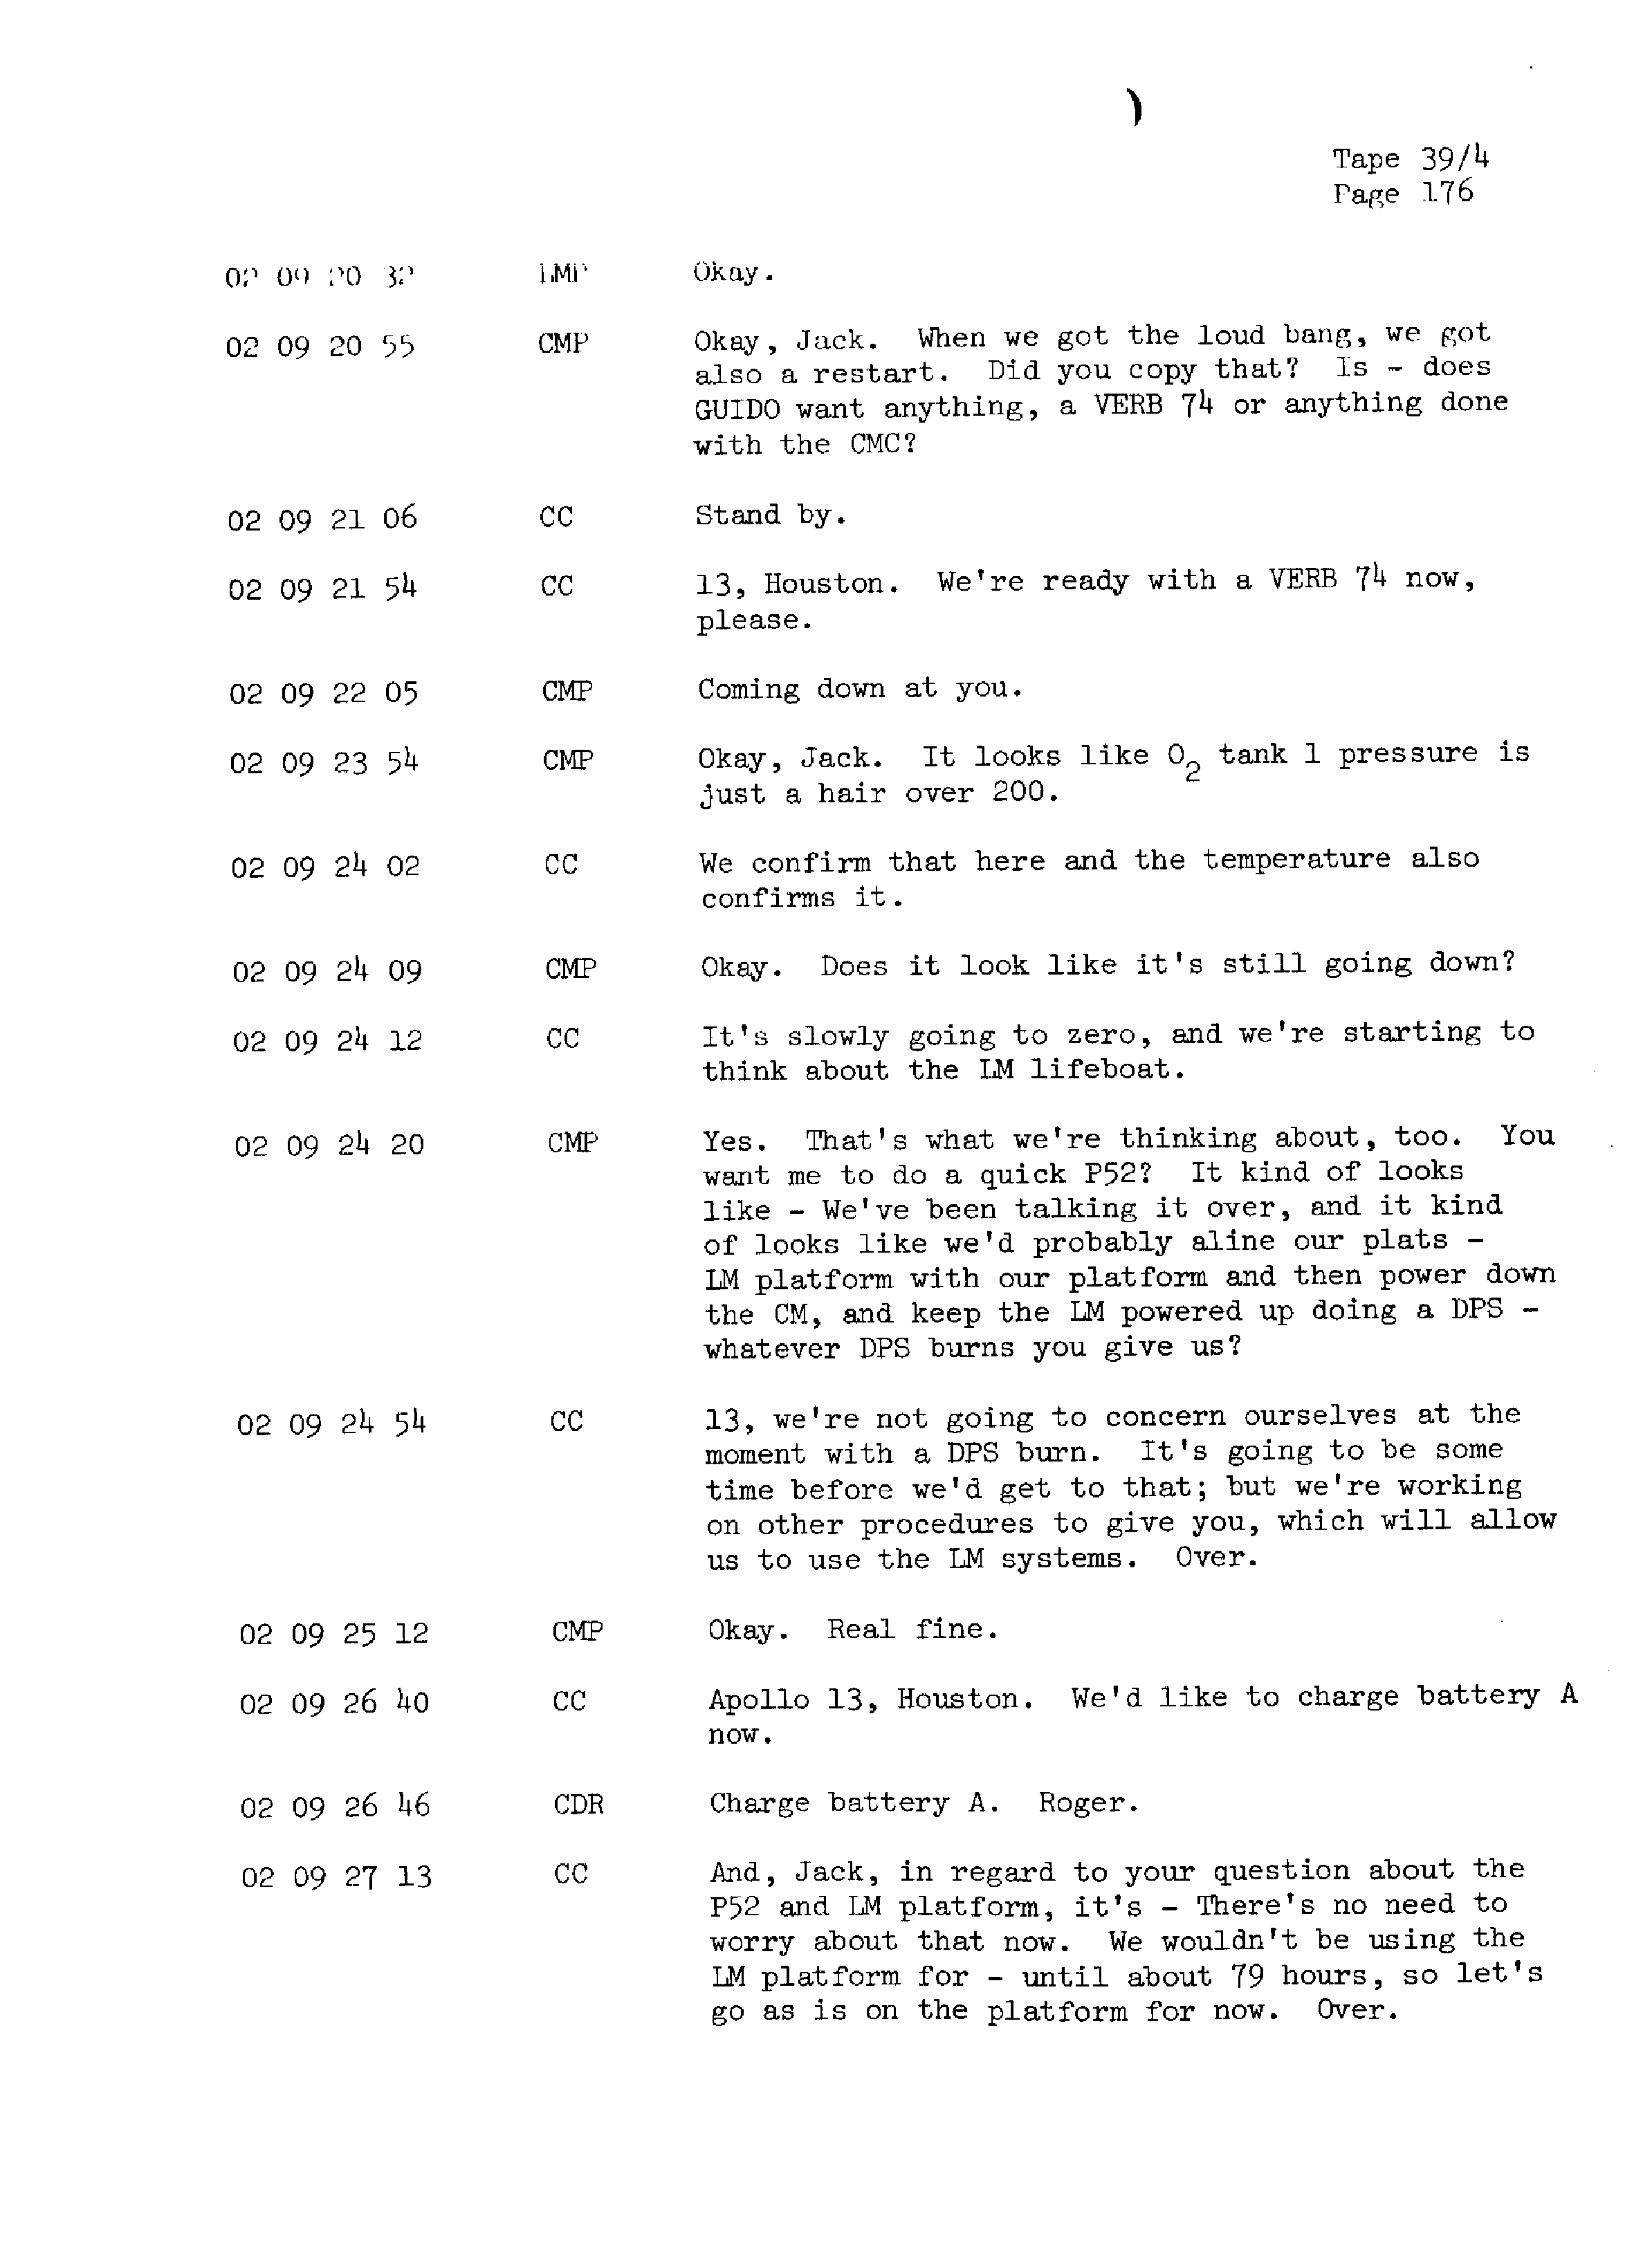 Page 183 of Apollo 13’s original transcript